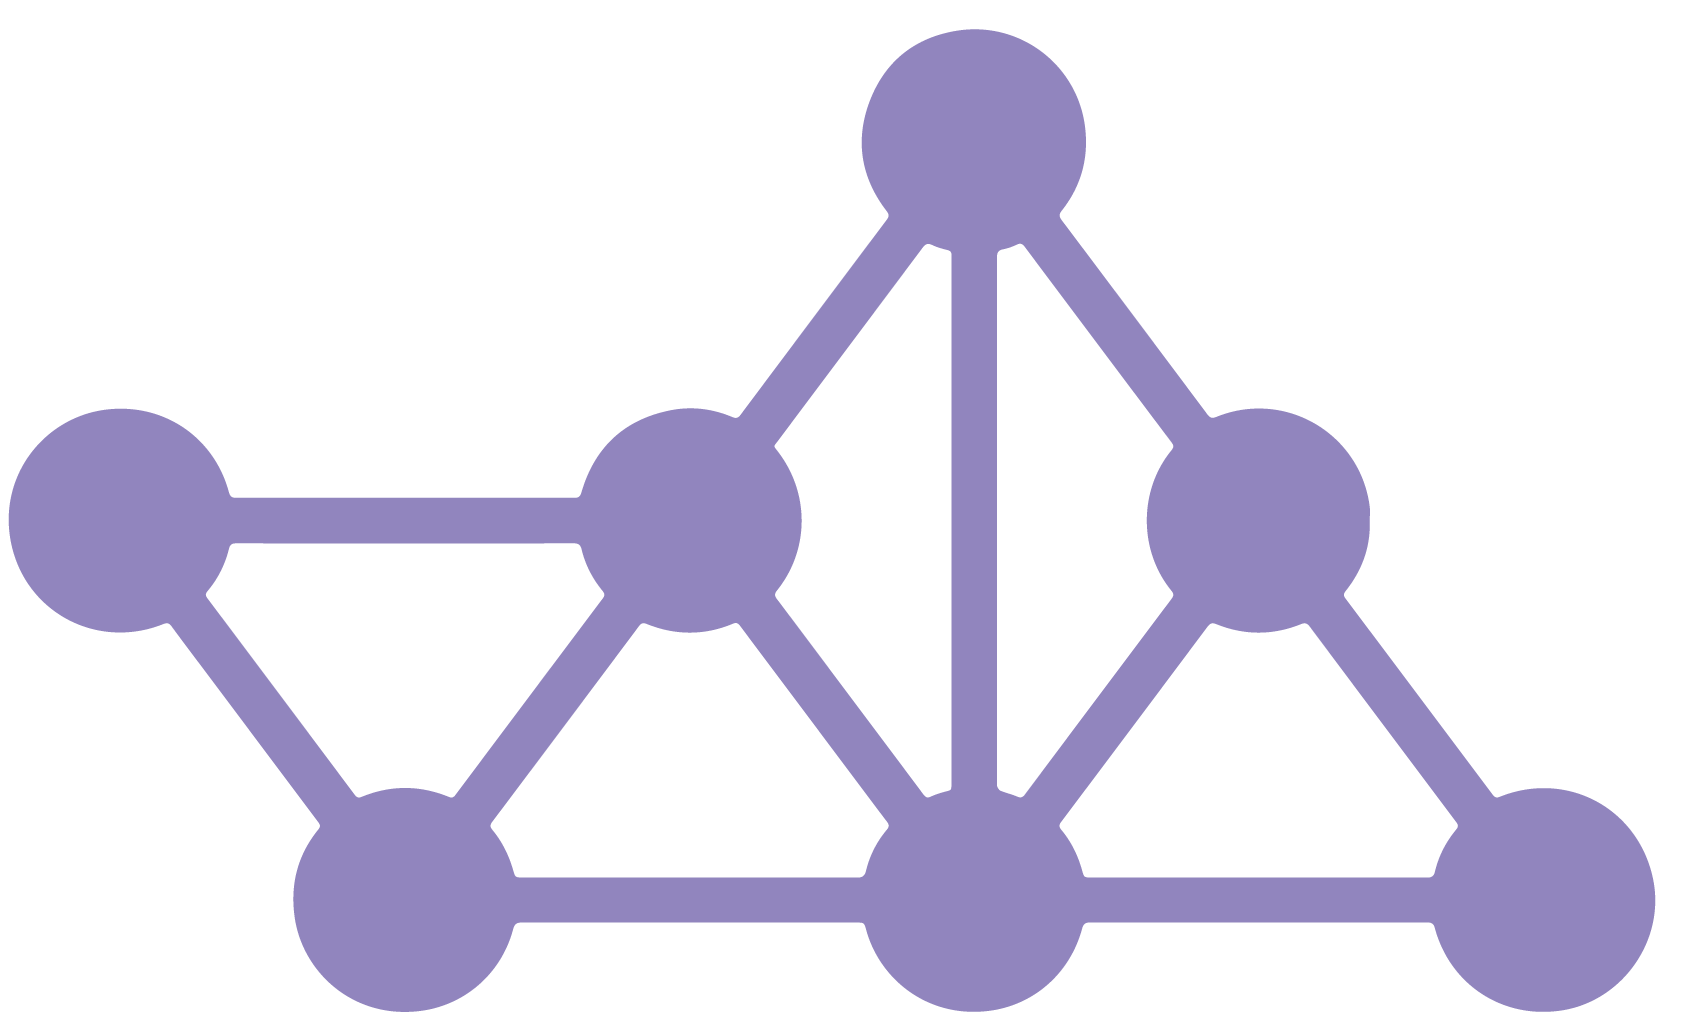 MASS logo motif in purple